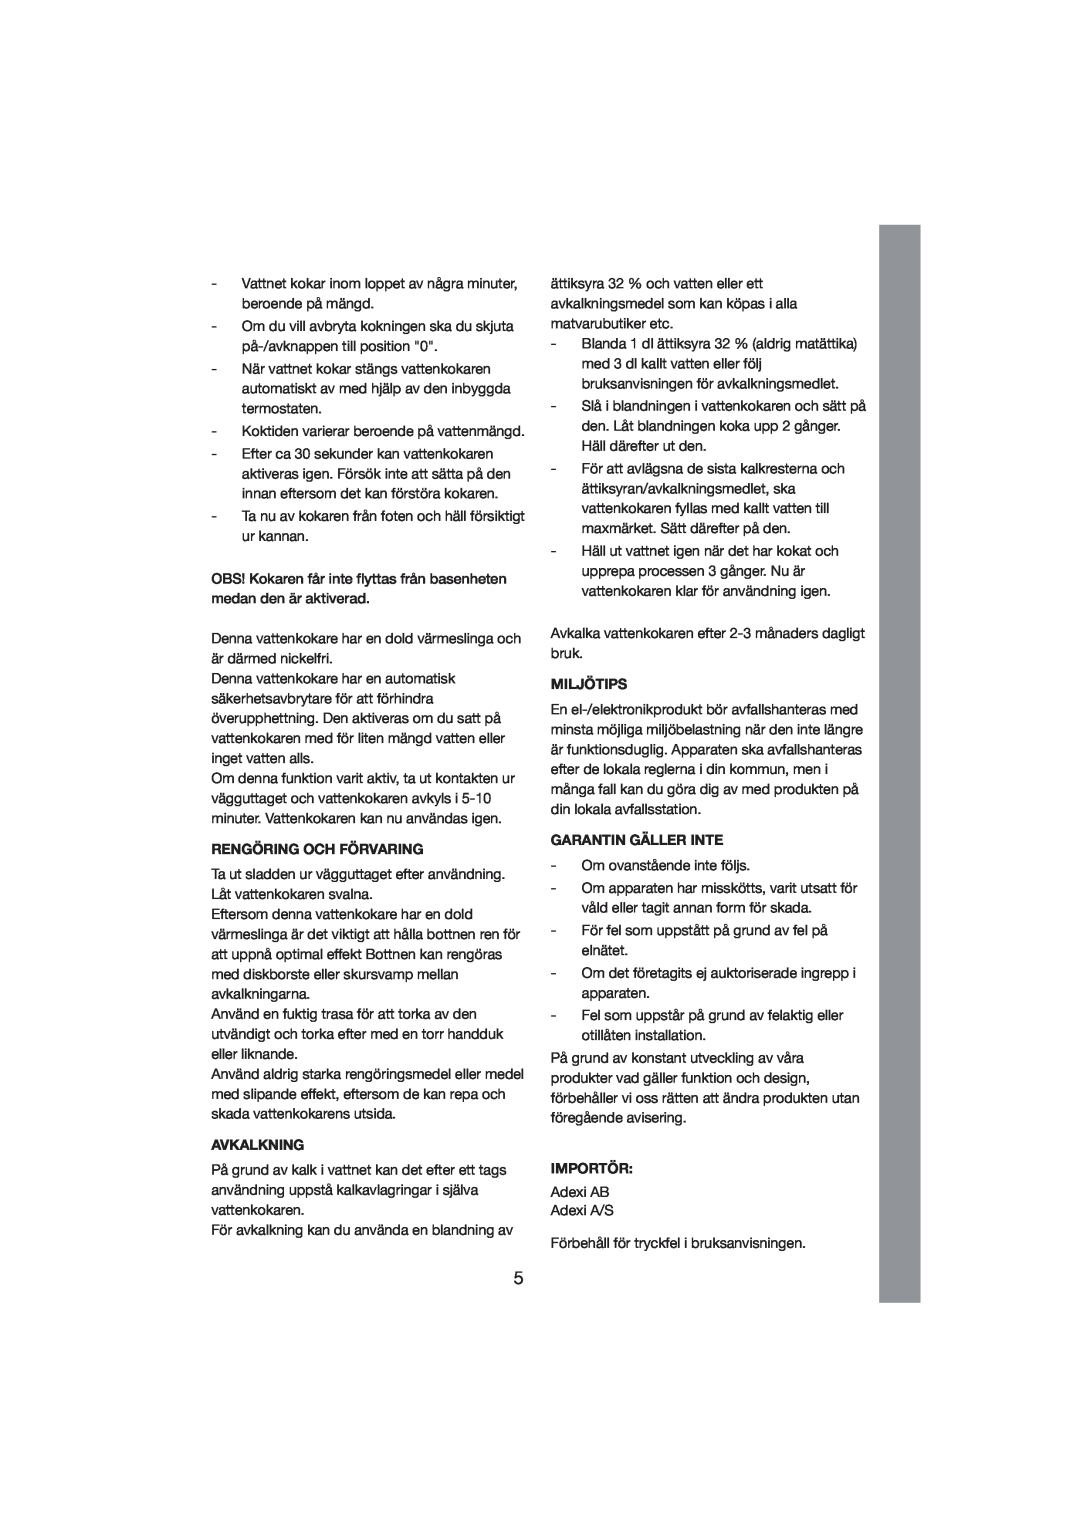 Melissa 245-023 manual Rengöring Och Förvaring, Avkalkning, Miljötips, Garantin Gäller Inte, Importör 